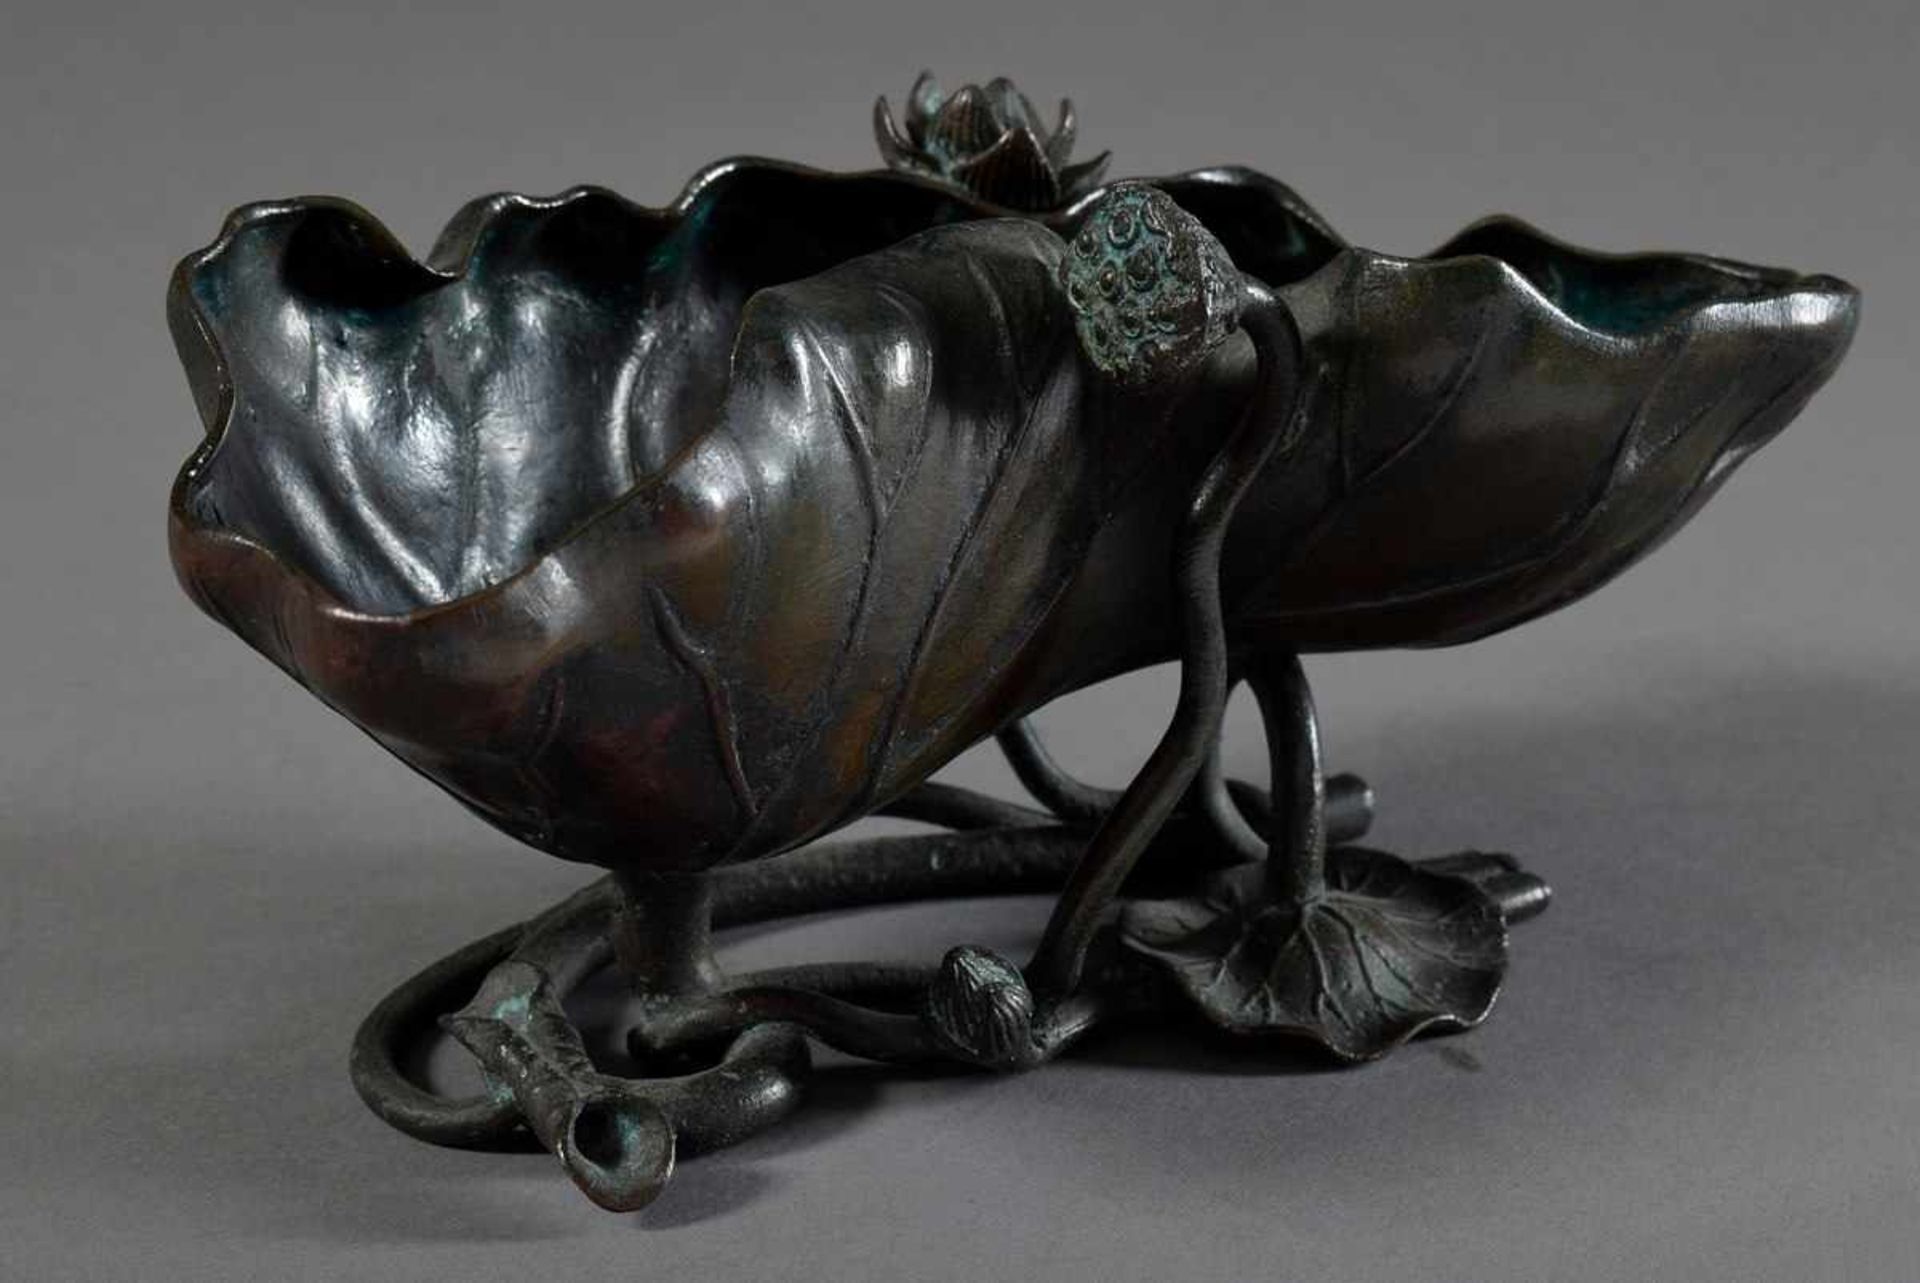 Japanische Bronze Schale "Lotusblatt", gemarkt "Japan", 20. Jh., 9,5x20x9cmJapanese bronze bowl " - Image 3 of 6